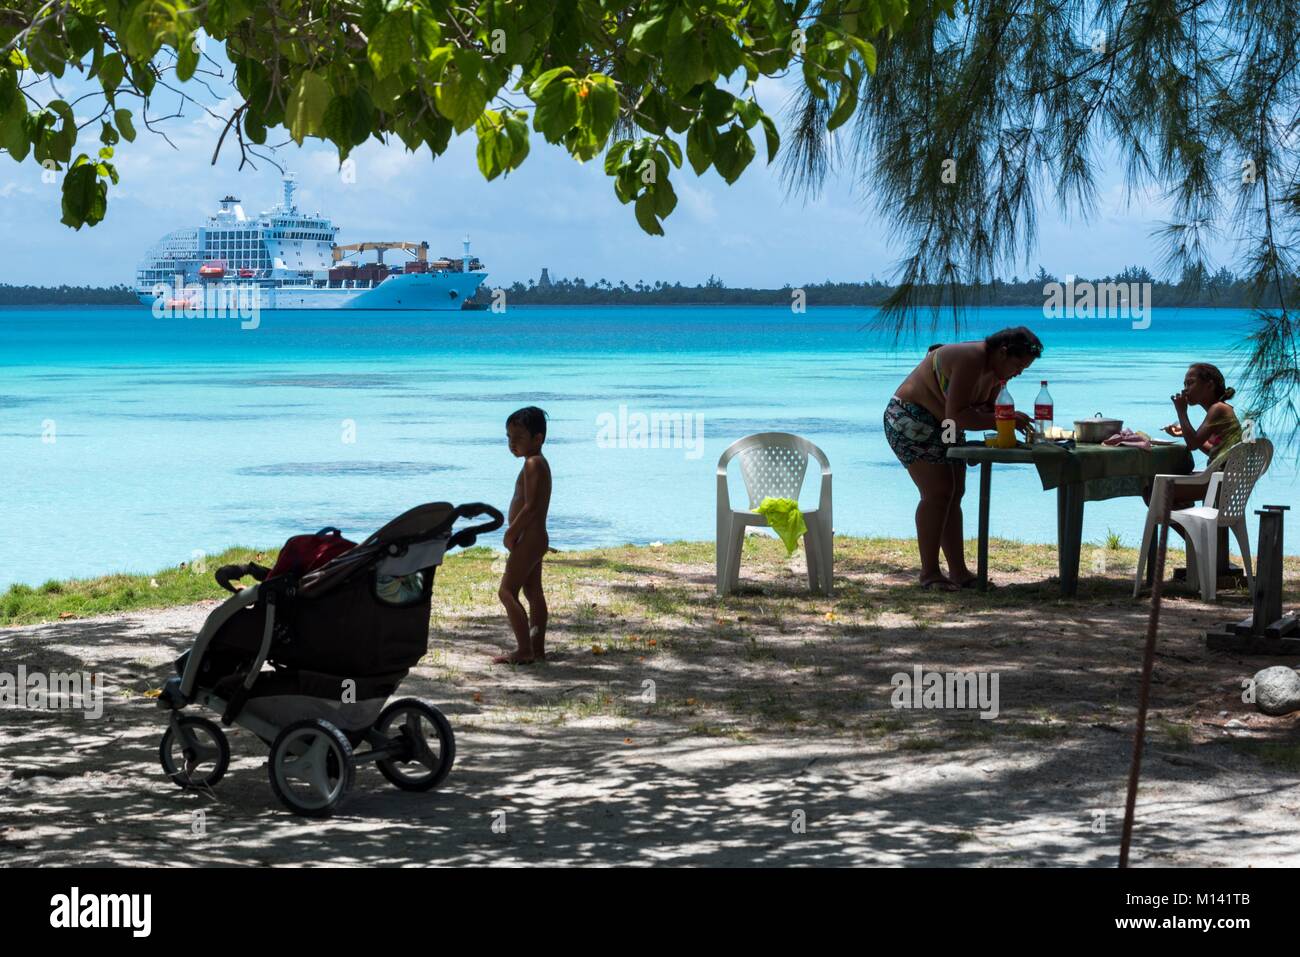 France, French Polynesia, Tuamotu Archipelago, Fakarava Atoll, Rotoava, UNESCO Biosphere Reserve, Cruise aboard Aranui 5, Aranui 5 at anchor in the lagoon, picnic Stock Photo